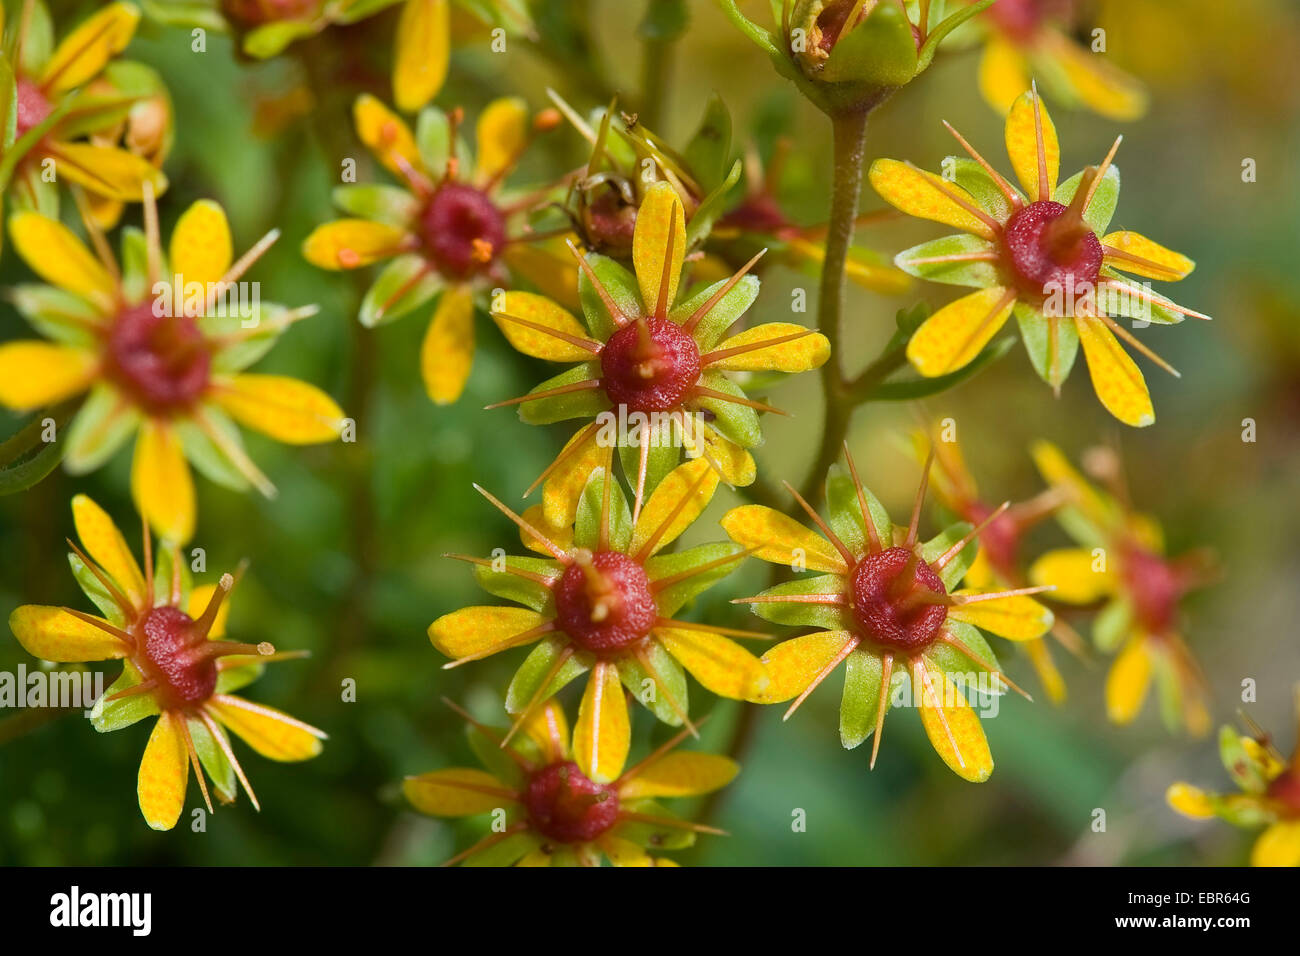 yellow saxifrage, yellow mountain saxifrage, evergreen saxifrage (Saxifraga aizoides), flowers, Germany Stock Photo